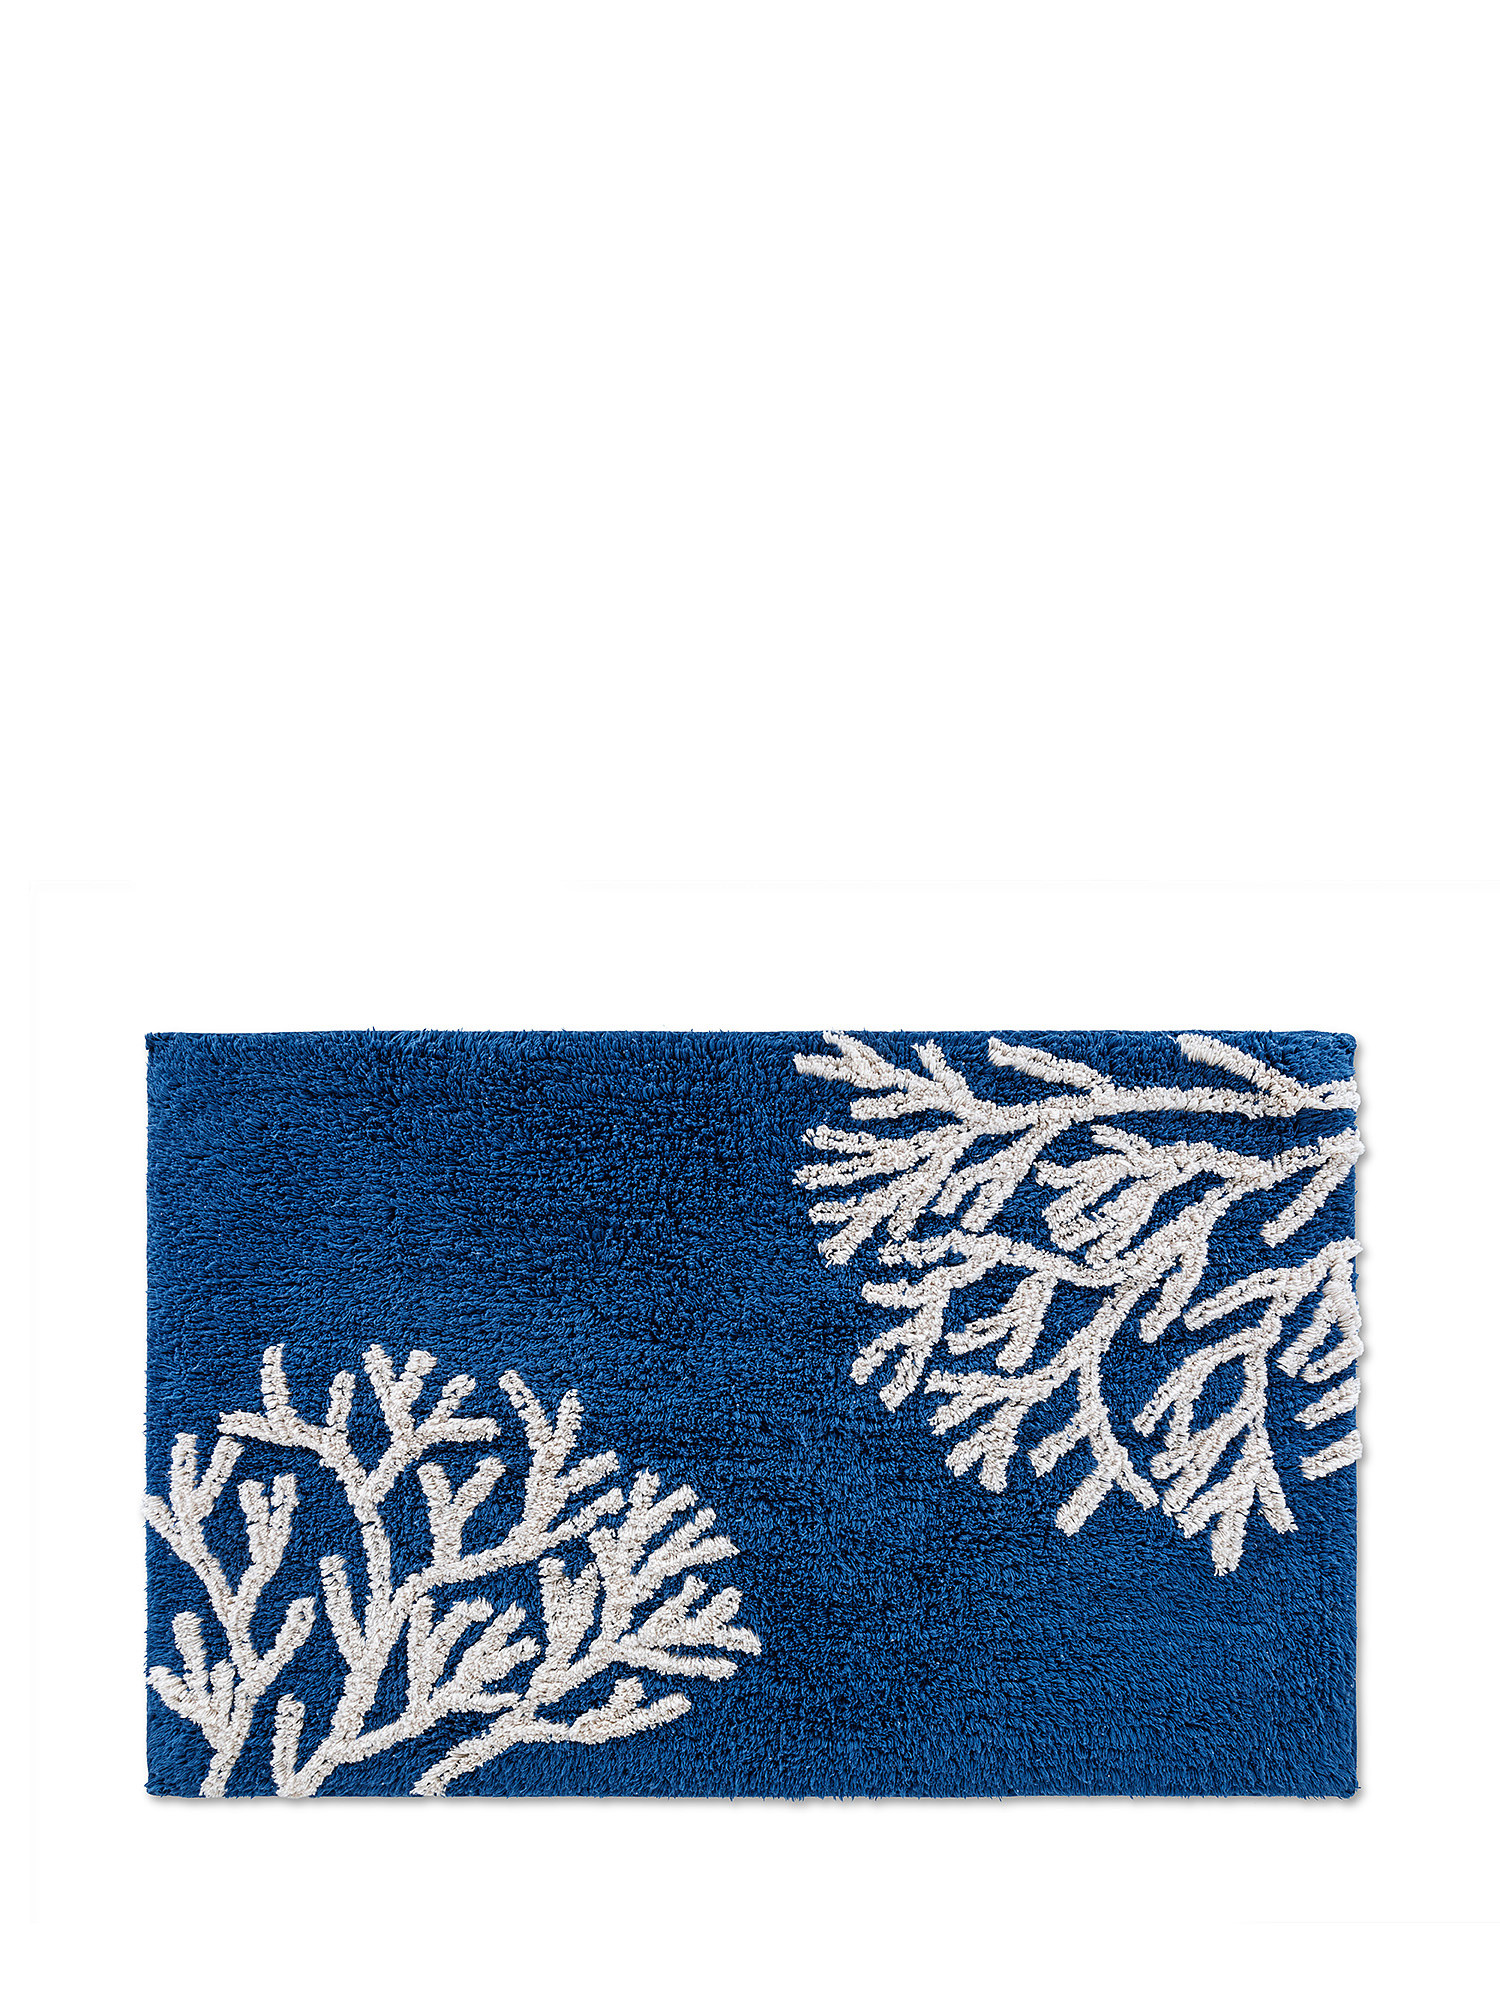 Tappeto bagno cotone motivo coralli, Blu, large